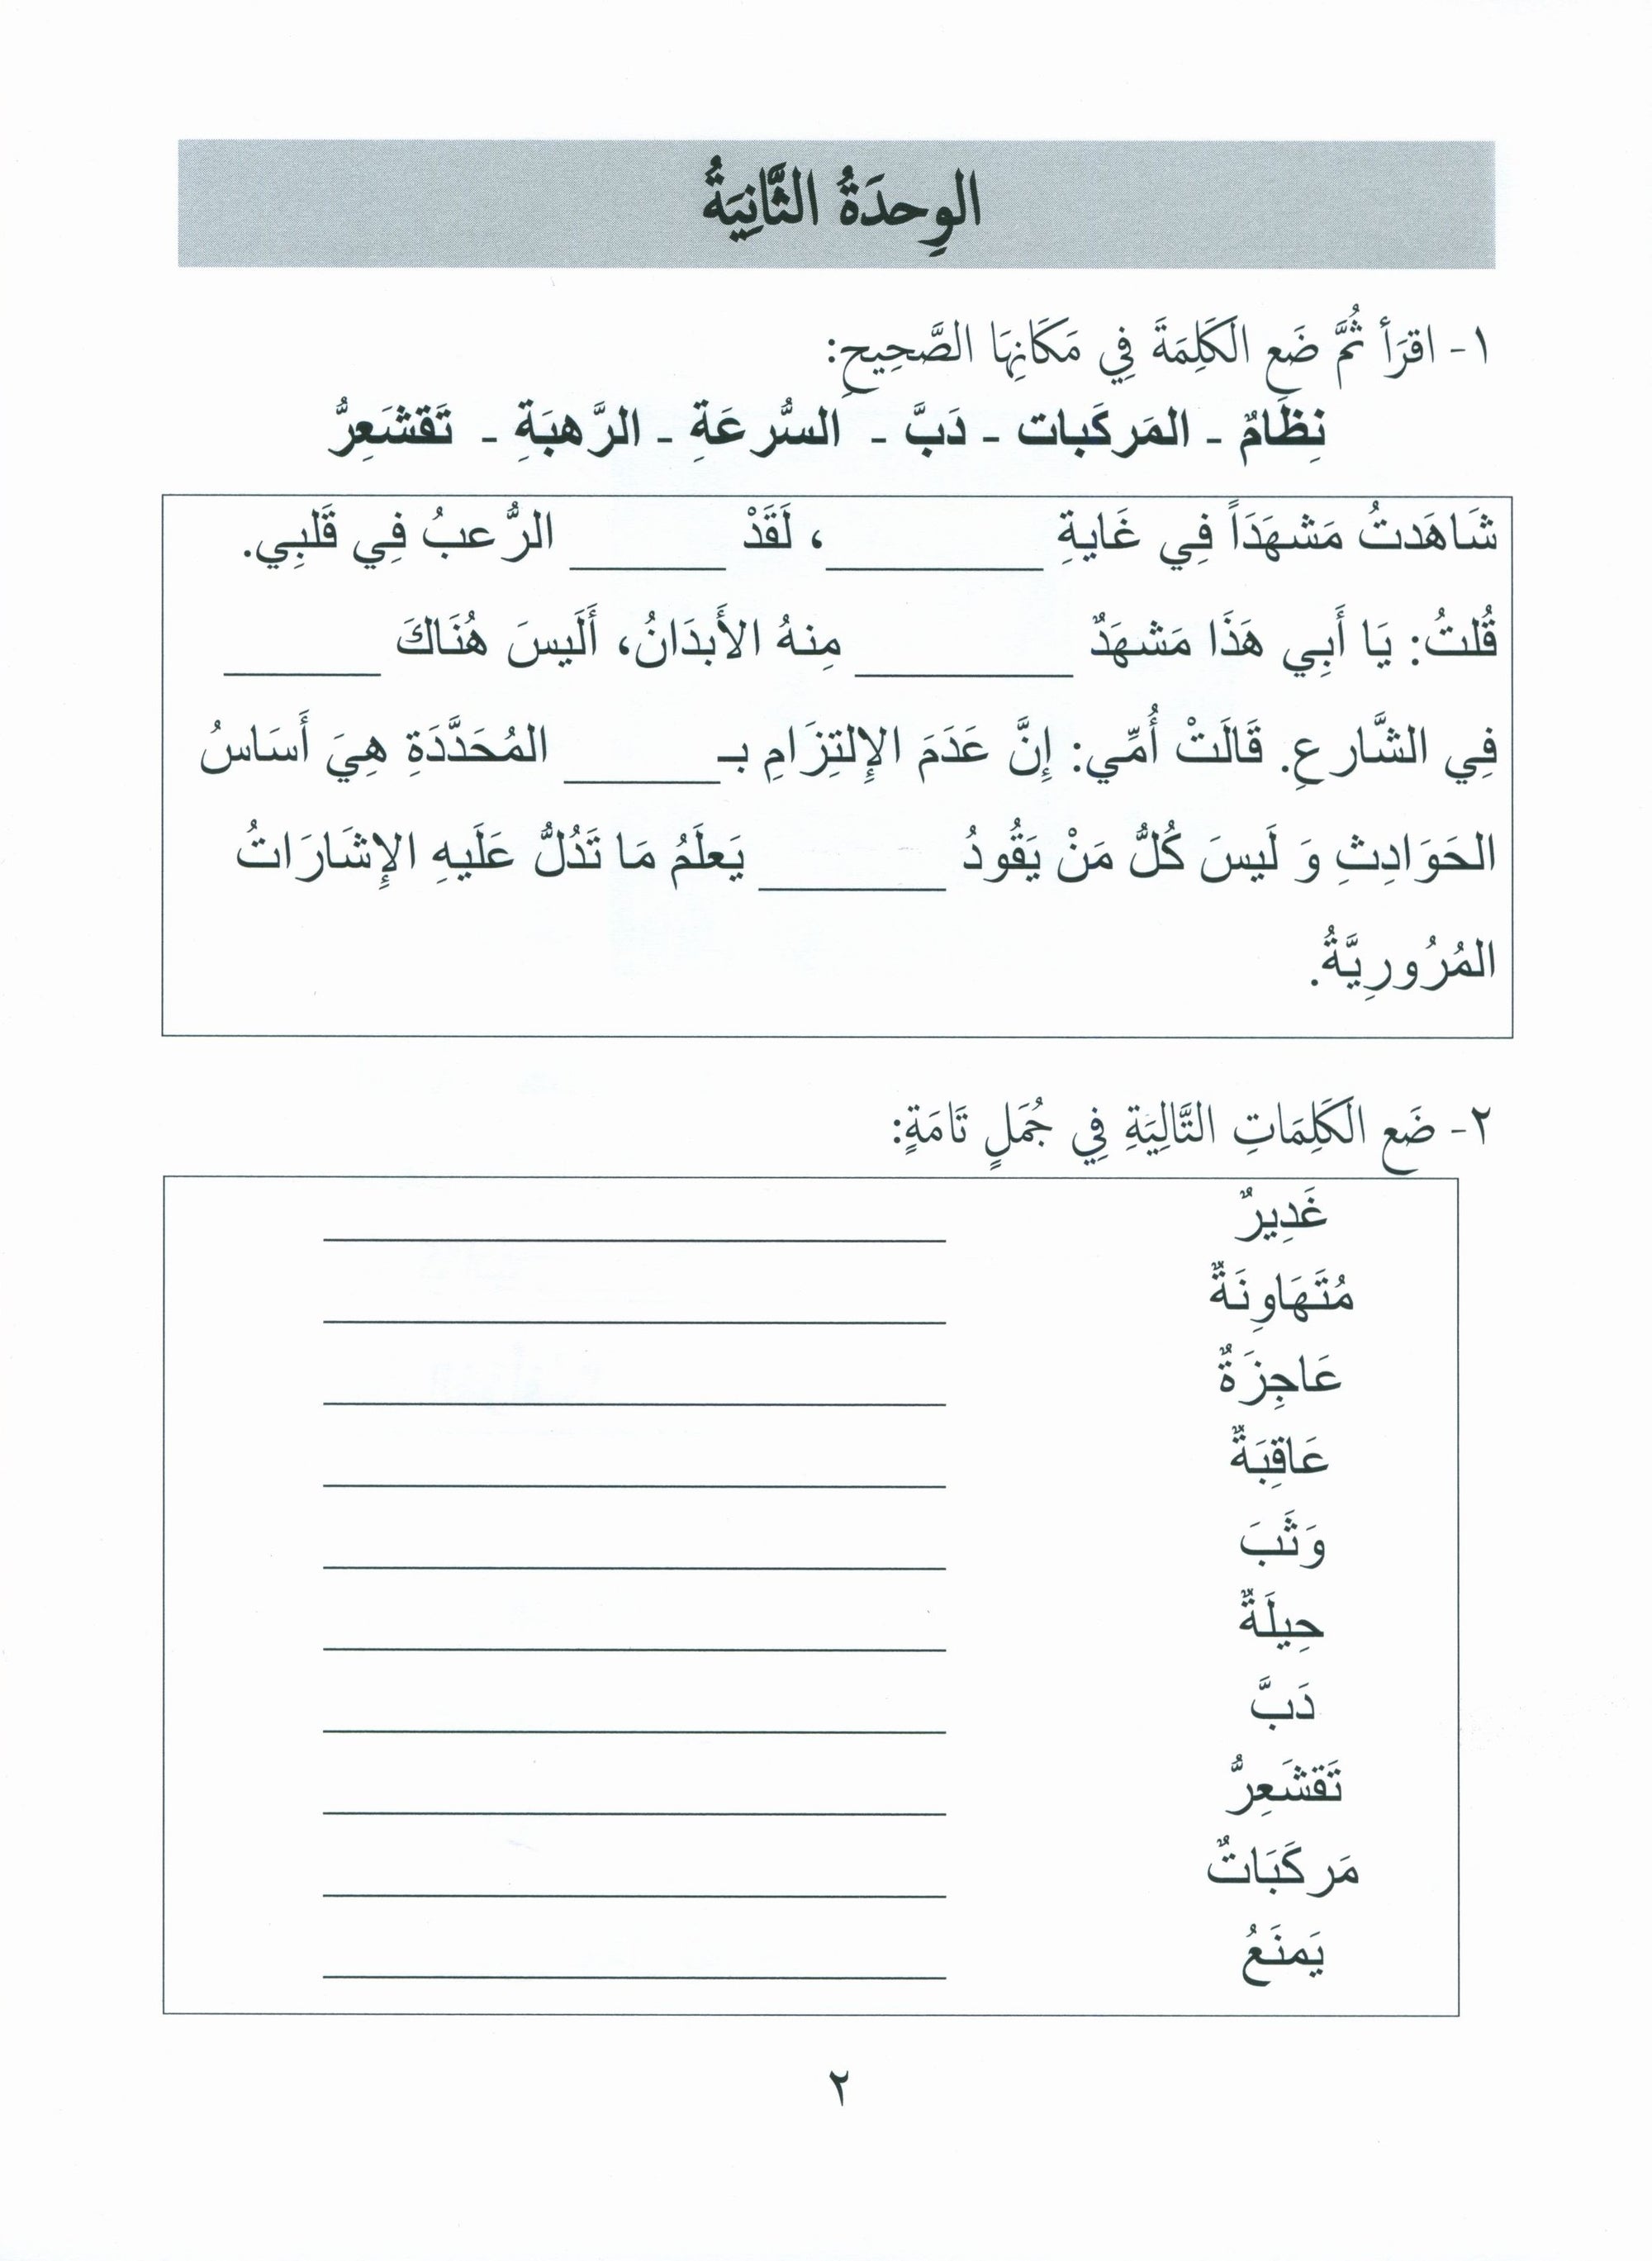 Gems of Arabic Assessment Level 4